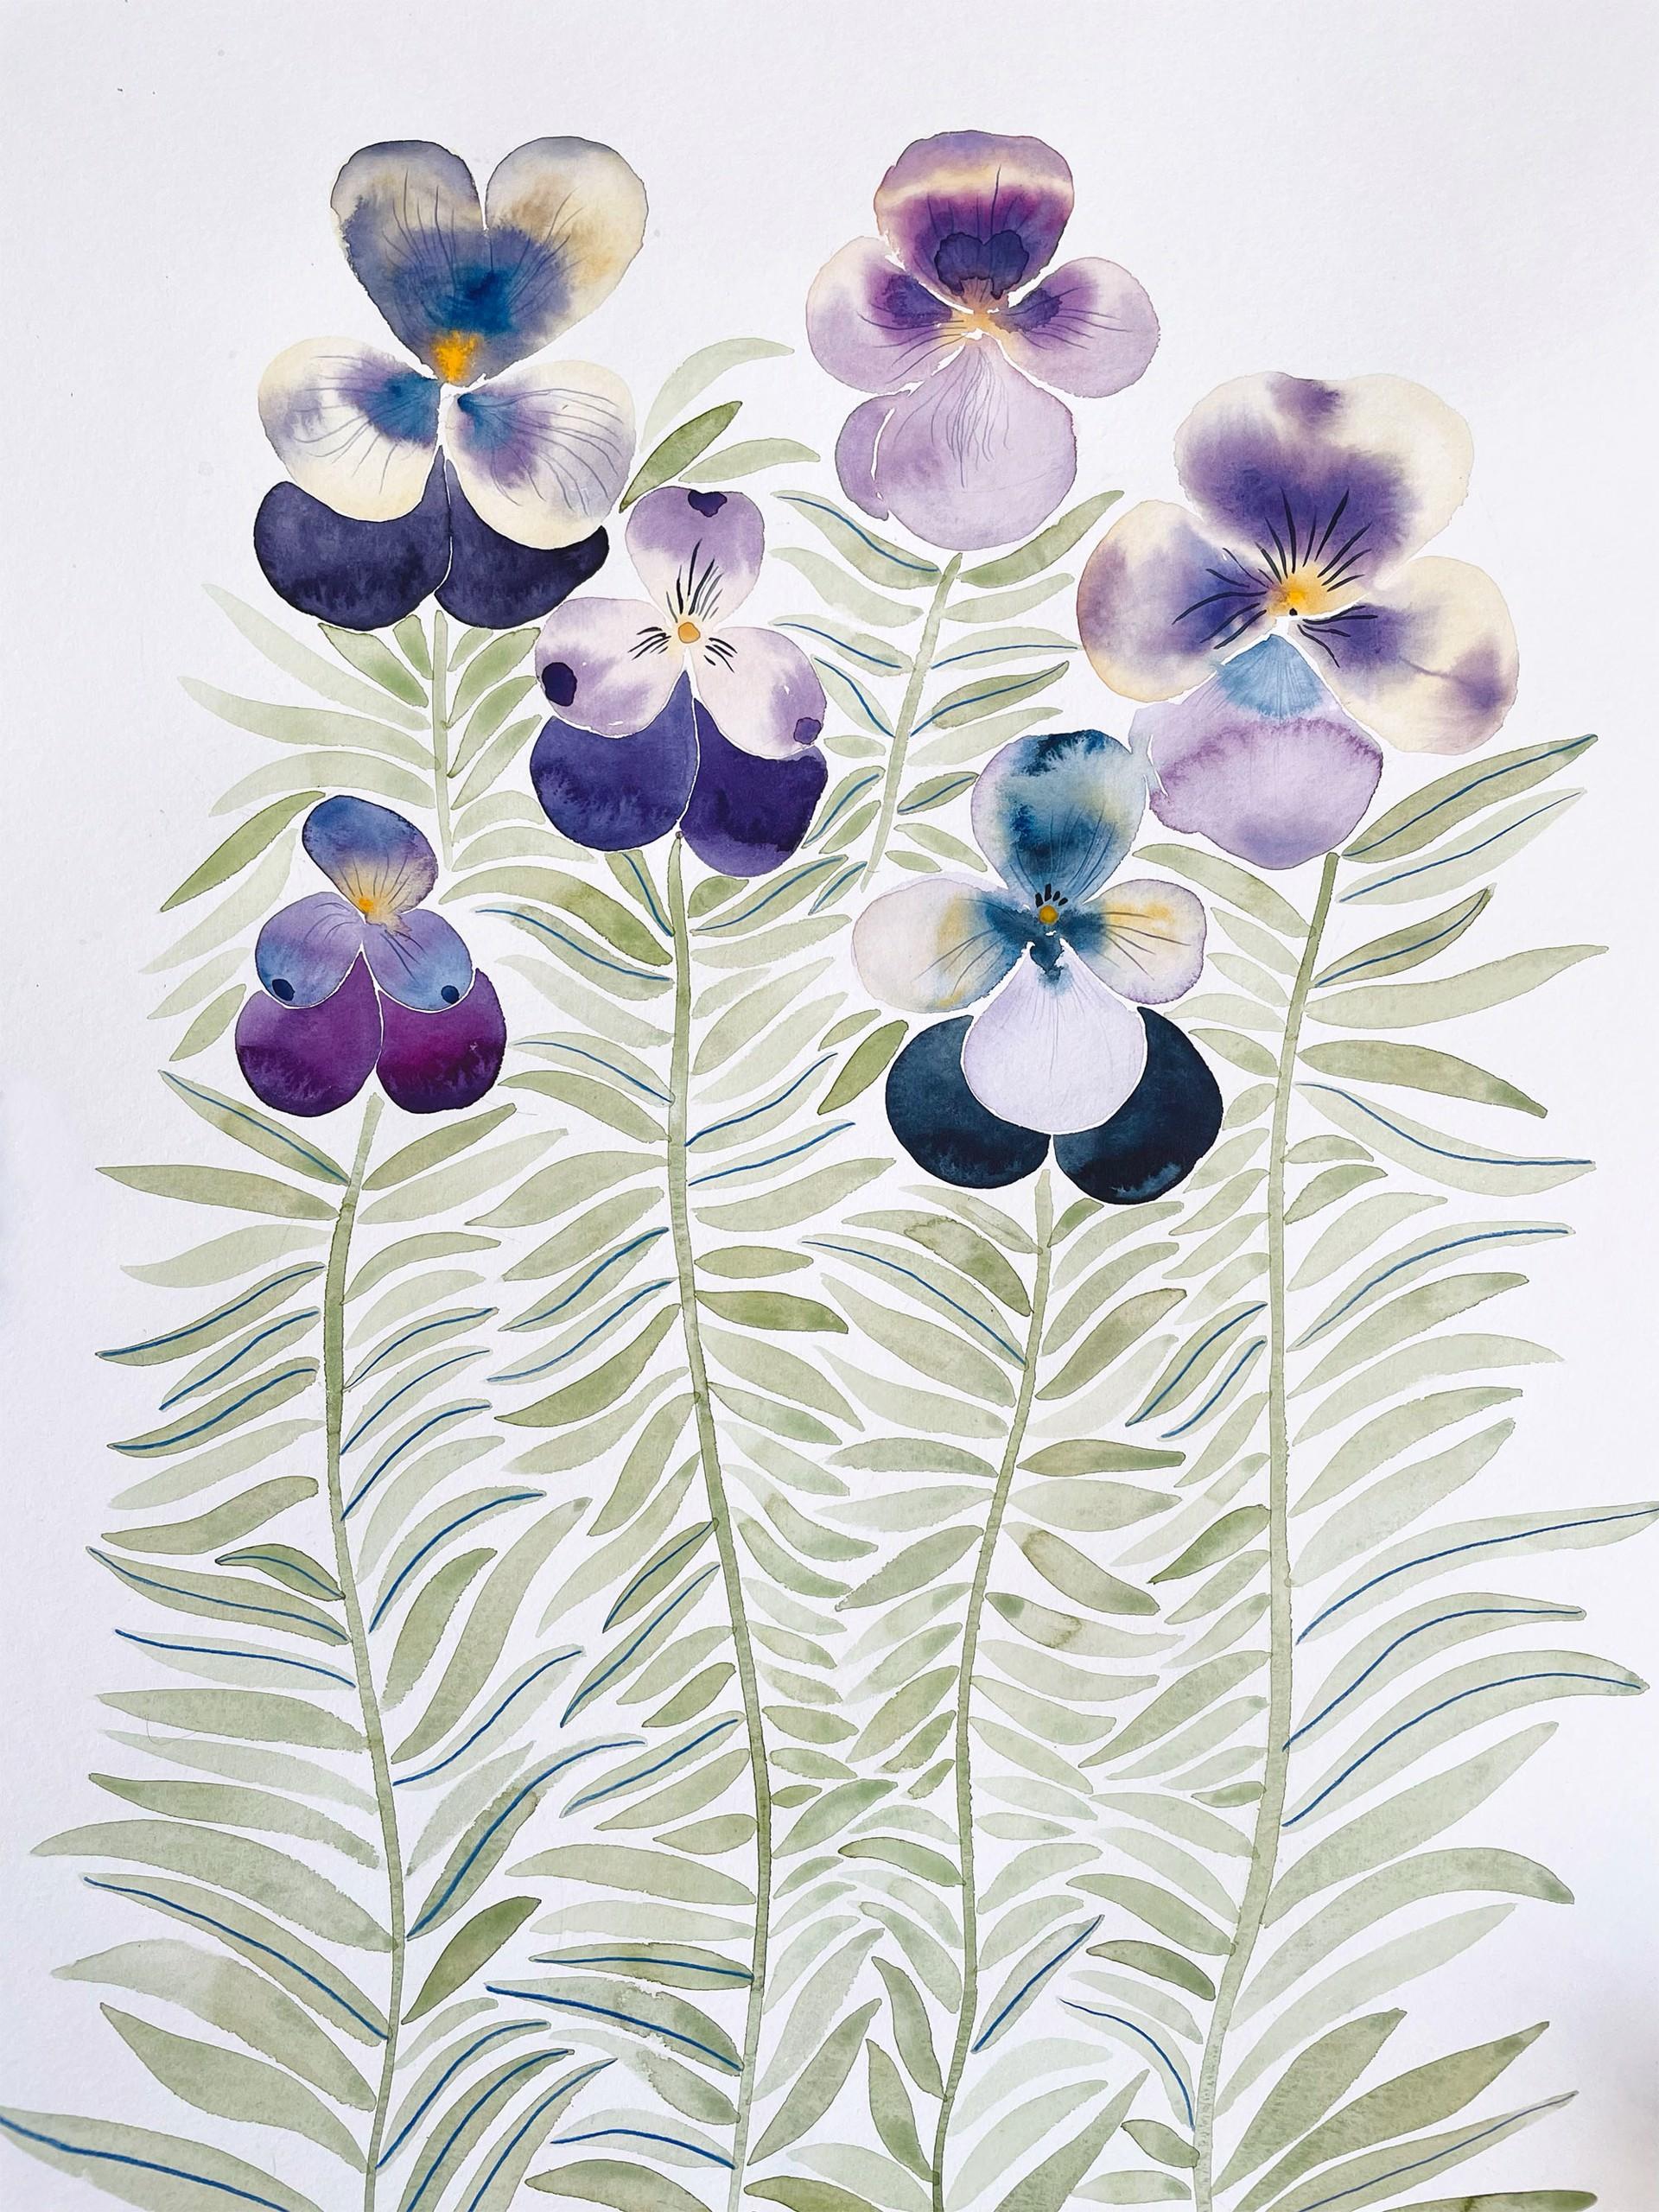 Anine Cecilie Iverson Landscape Art - Lilliac Pansies, painting & illustration, florals & nature, purple & yellow